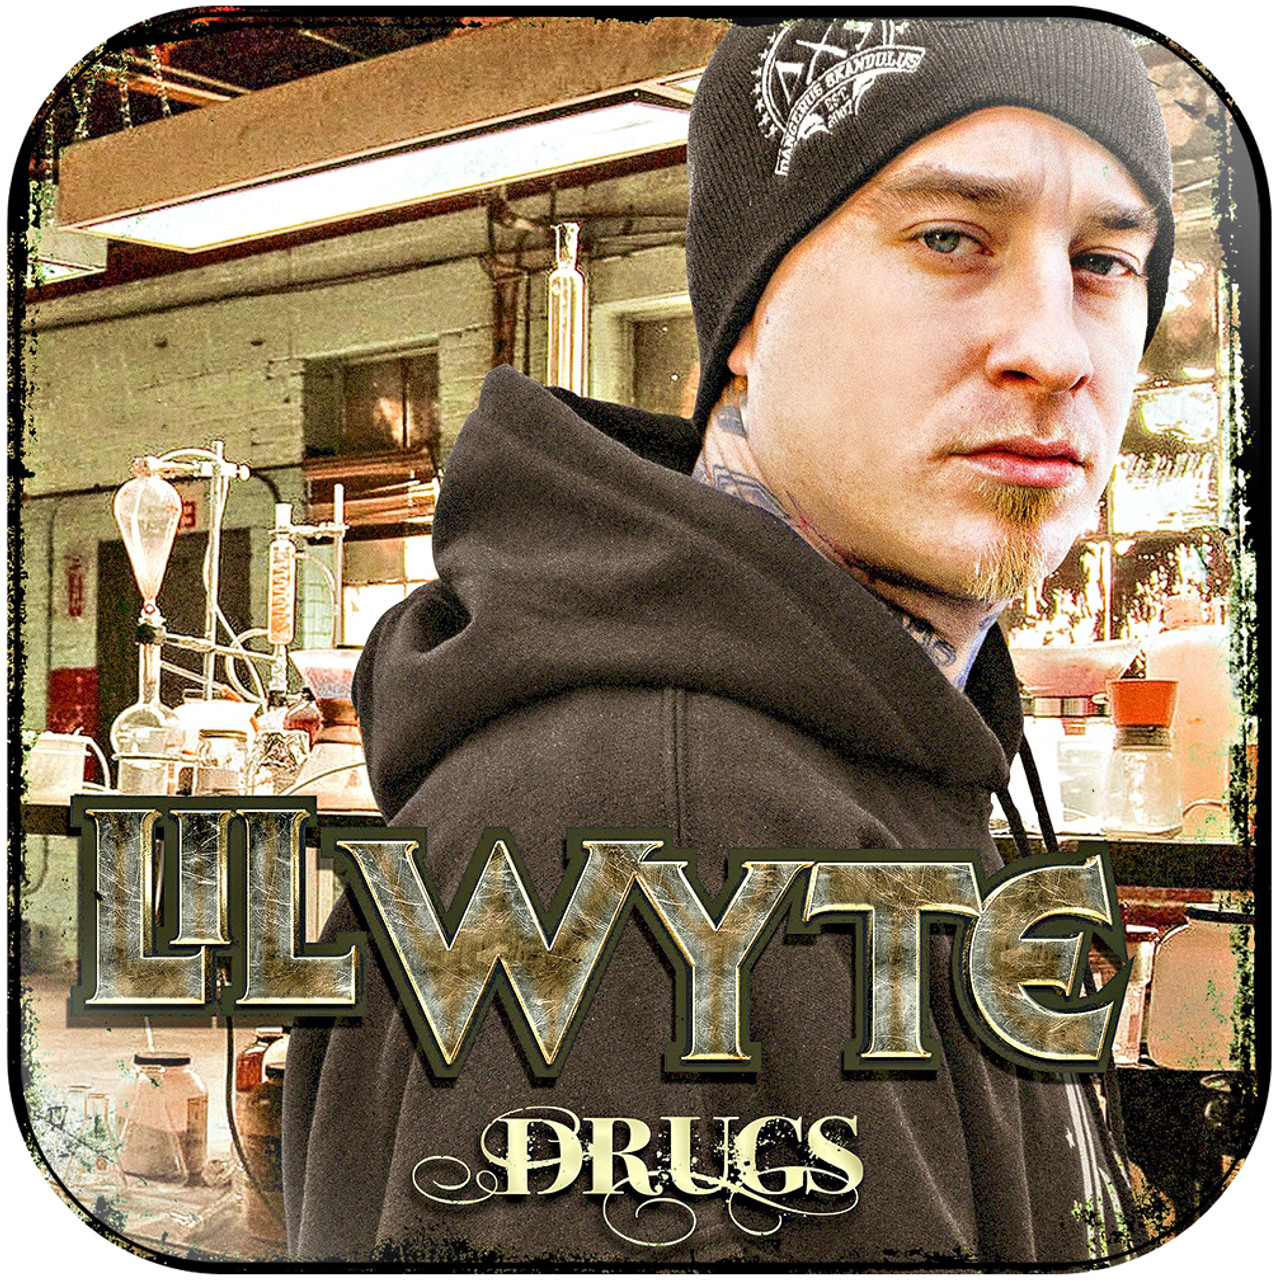 drugs-album-cover-sticker__89440.1540306446.jpg